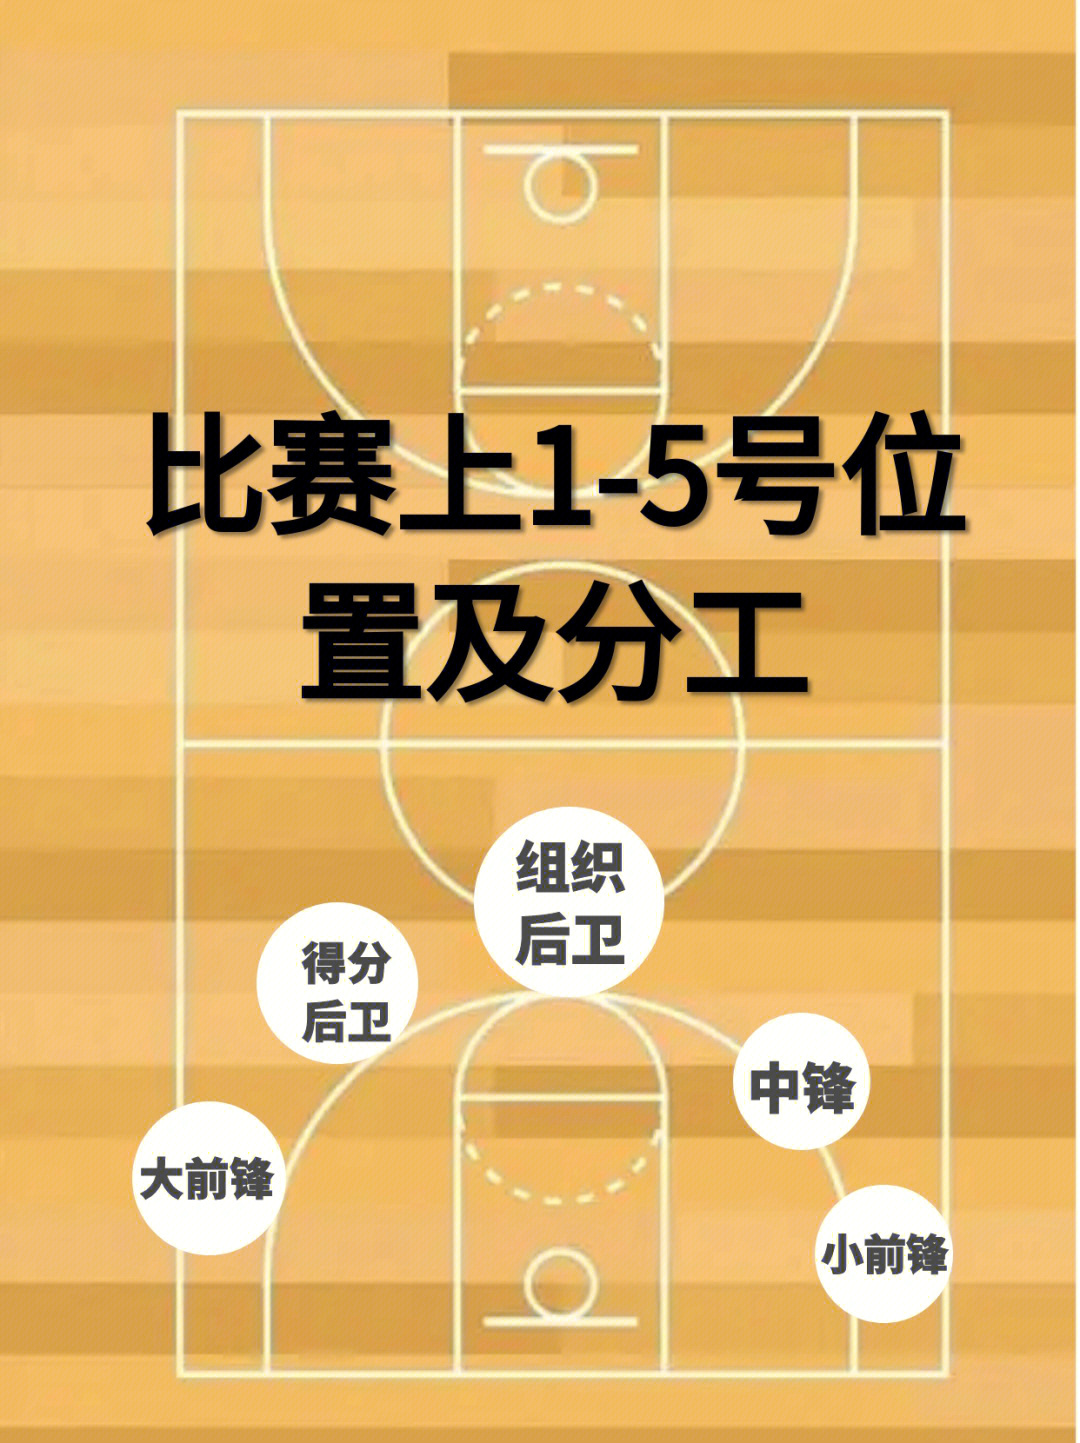 篮球五人分工站位图图片